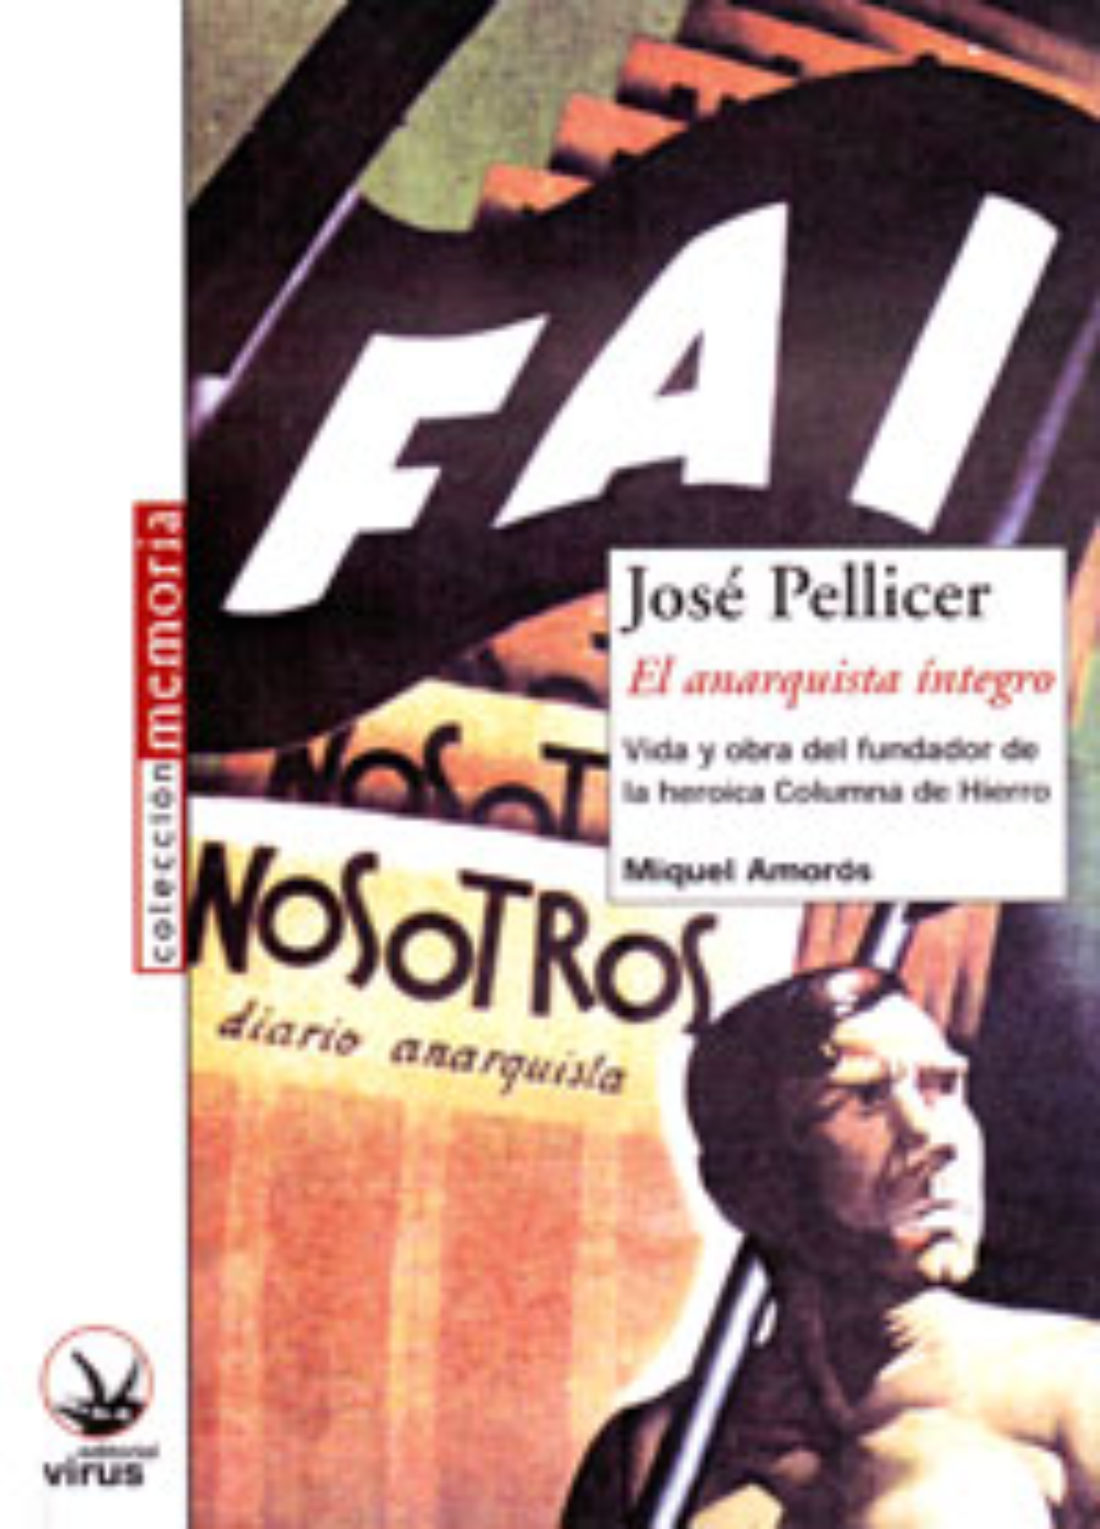 Presentación de “José Pellicer, el anarquista íntegro” y ”Maroto, el héroe”